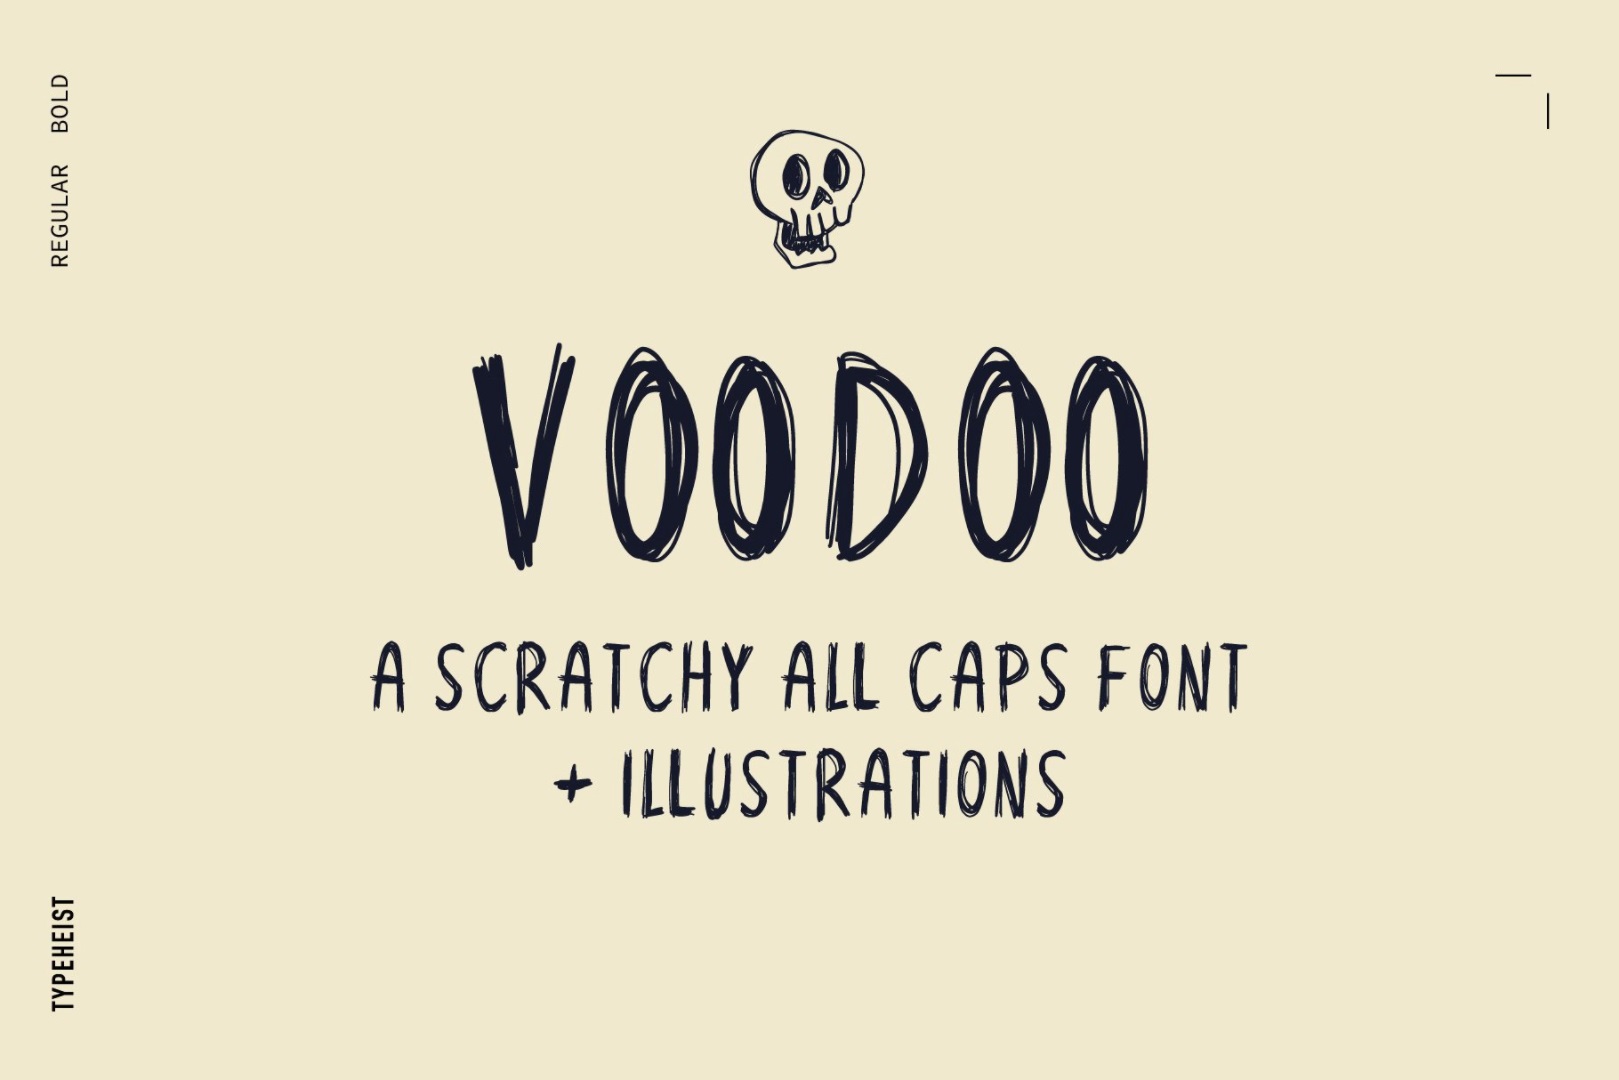 Voodoo lettertype